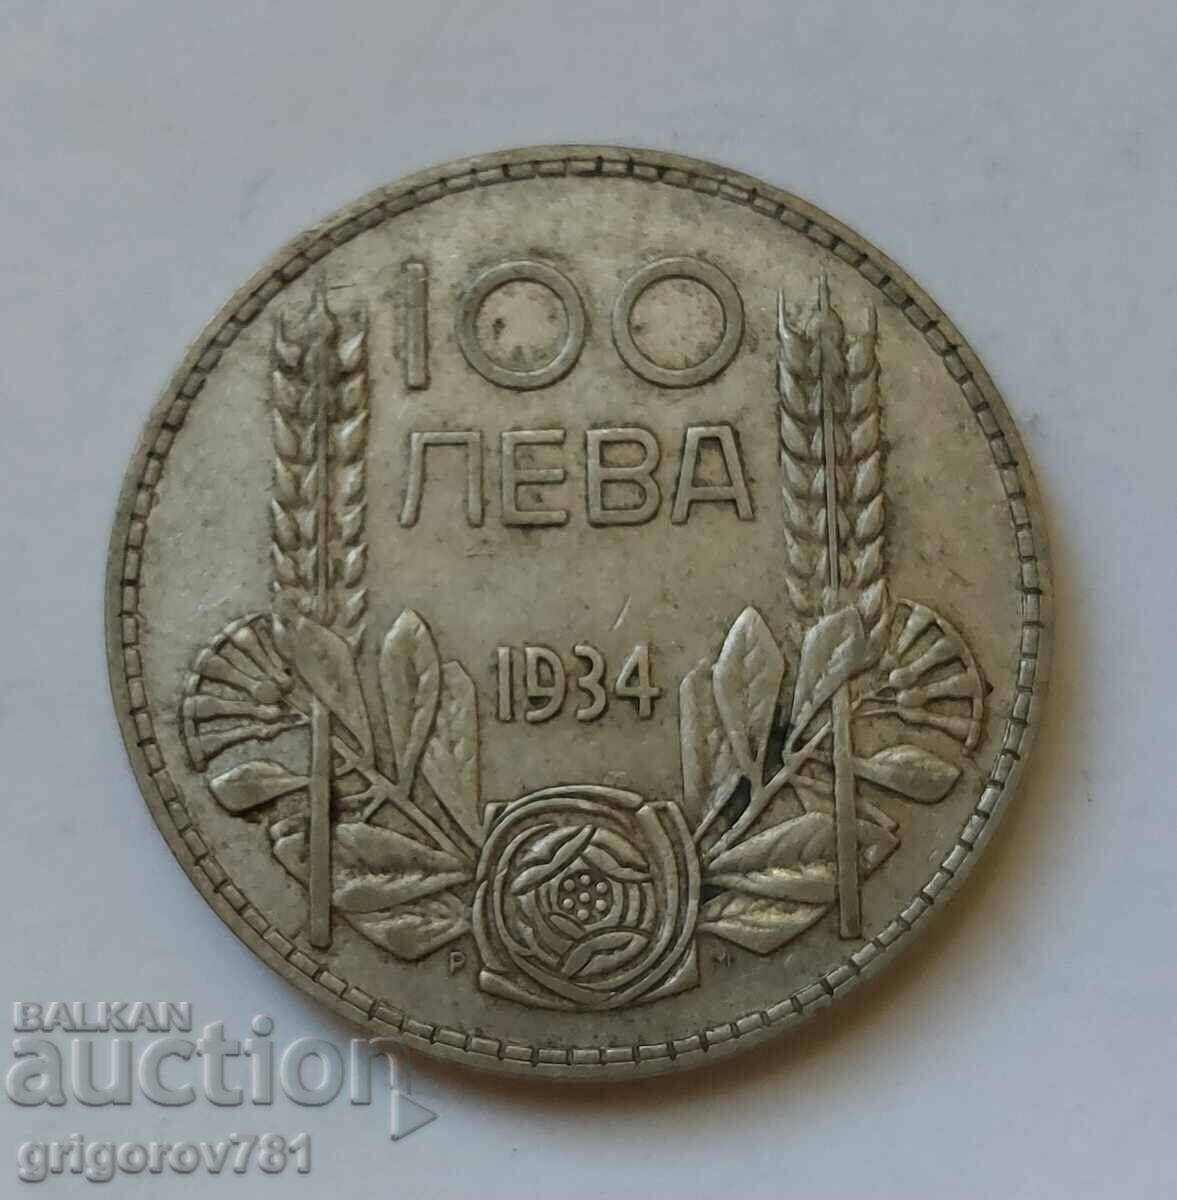 100 leva silver Bulgaria 1934 - silver coin #128